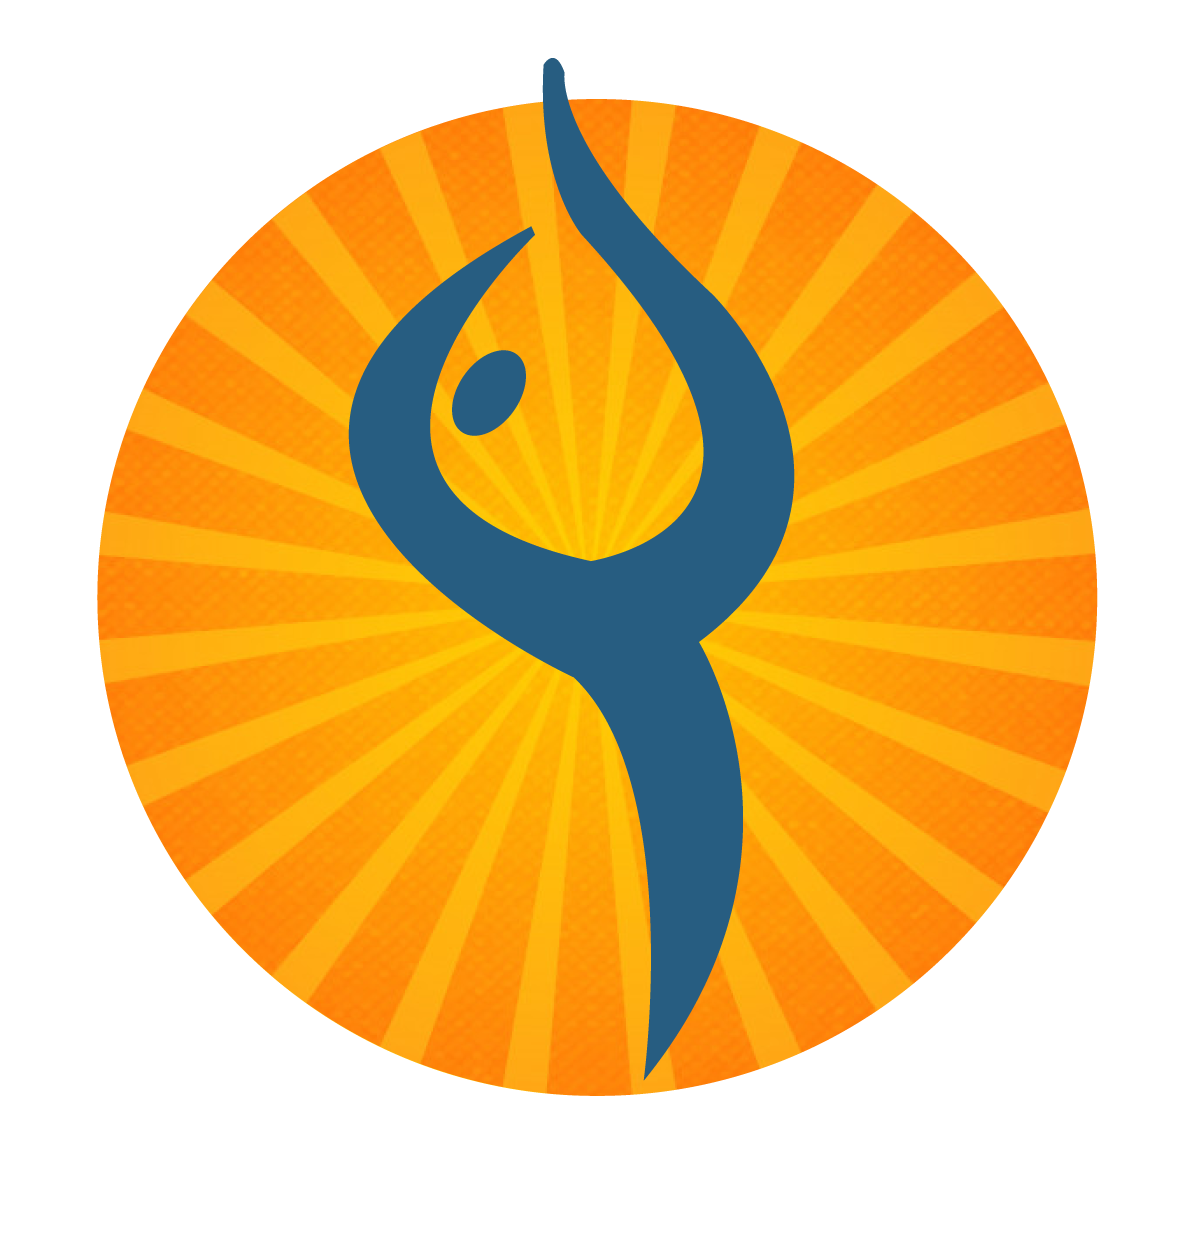 Yoga India Foundation - 200 Hours Yttc - Yoga India Foundation (1452x1380)